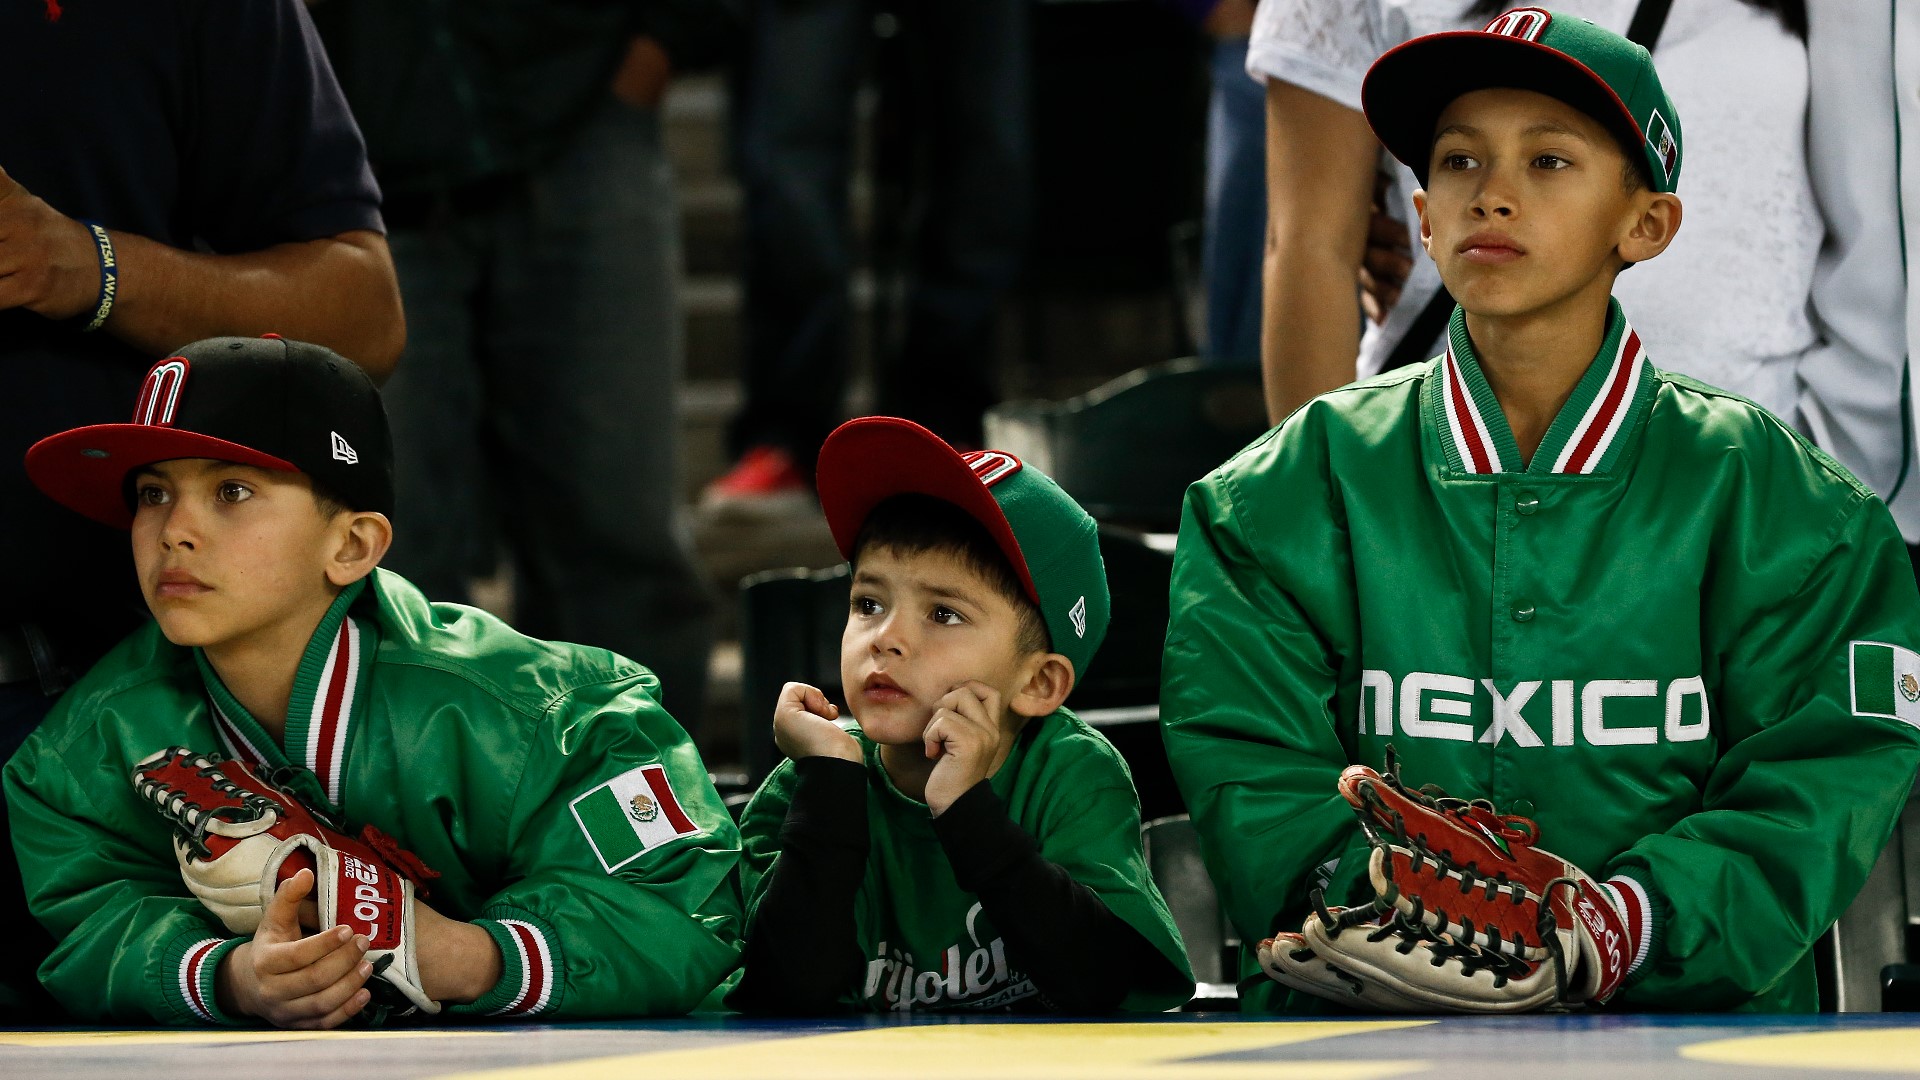 Le presentamos las fechas en que la Selección Mexicana verá actividad en el Clásico Mundial de Béisbol del 2023.